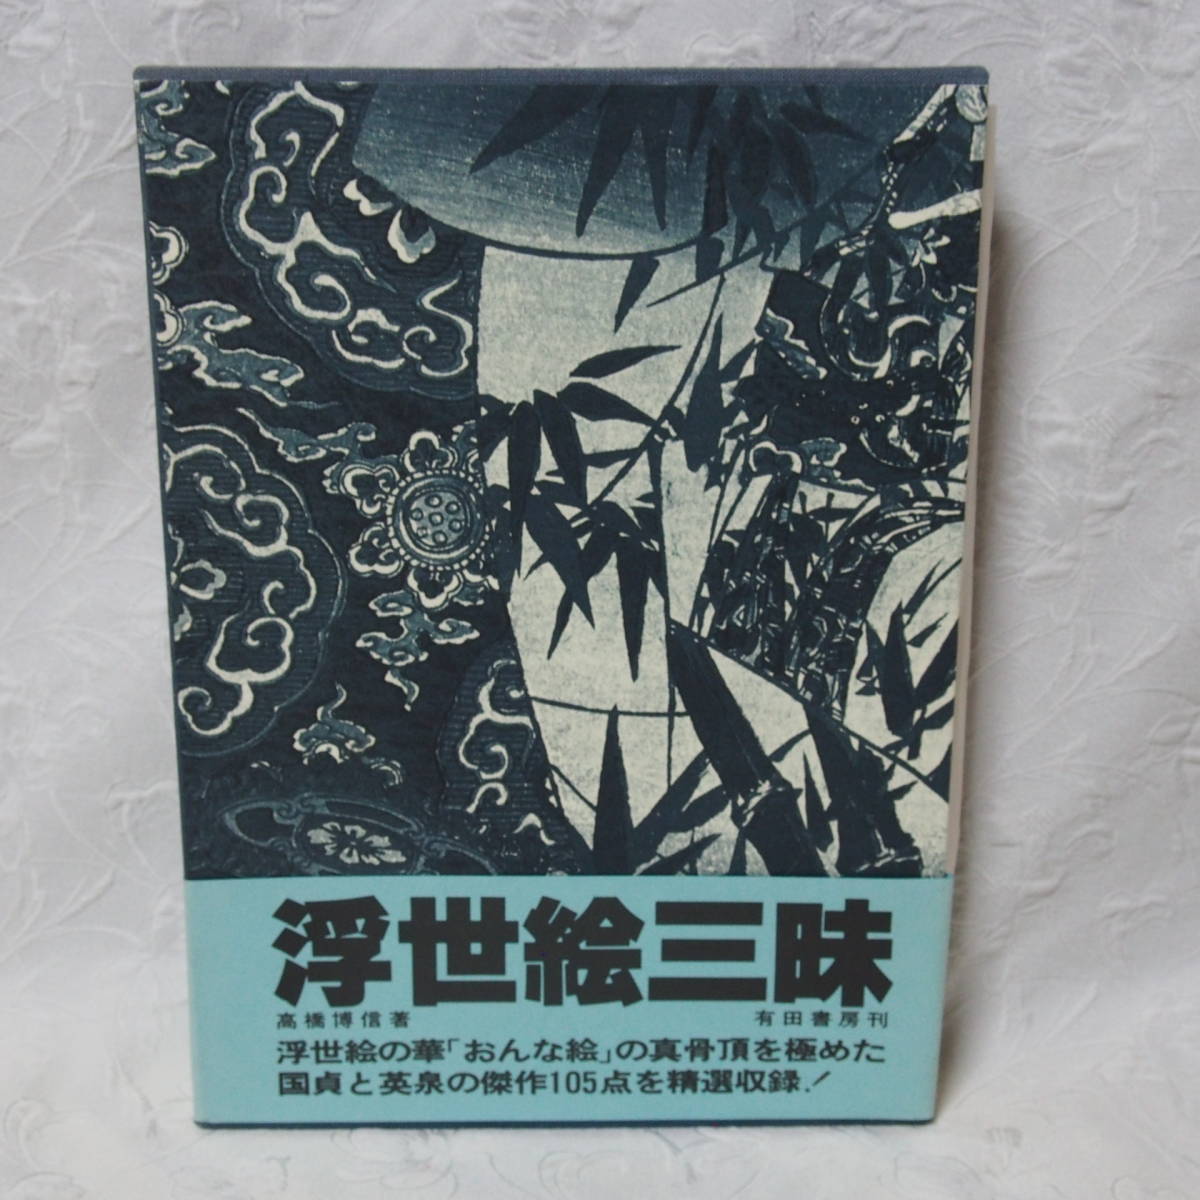 कीमती, दुर्लभ, और संग्रहणीय संस्करण!! उच्च गुणवत्ता वाली पुस्तक उकियो-ए ज़नमाई / हिरोनोबु ताकाहाशी / 15 दिसंबर को प्रकाशित, 1980 (उस समय कीमत:, 5000 येन), चित्रकारी, Ukiyo ए, प्रिंटों, एक खूबसूरत महिला का चित्र